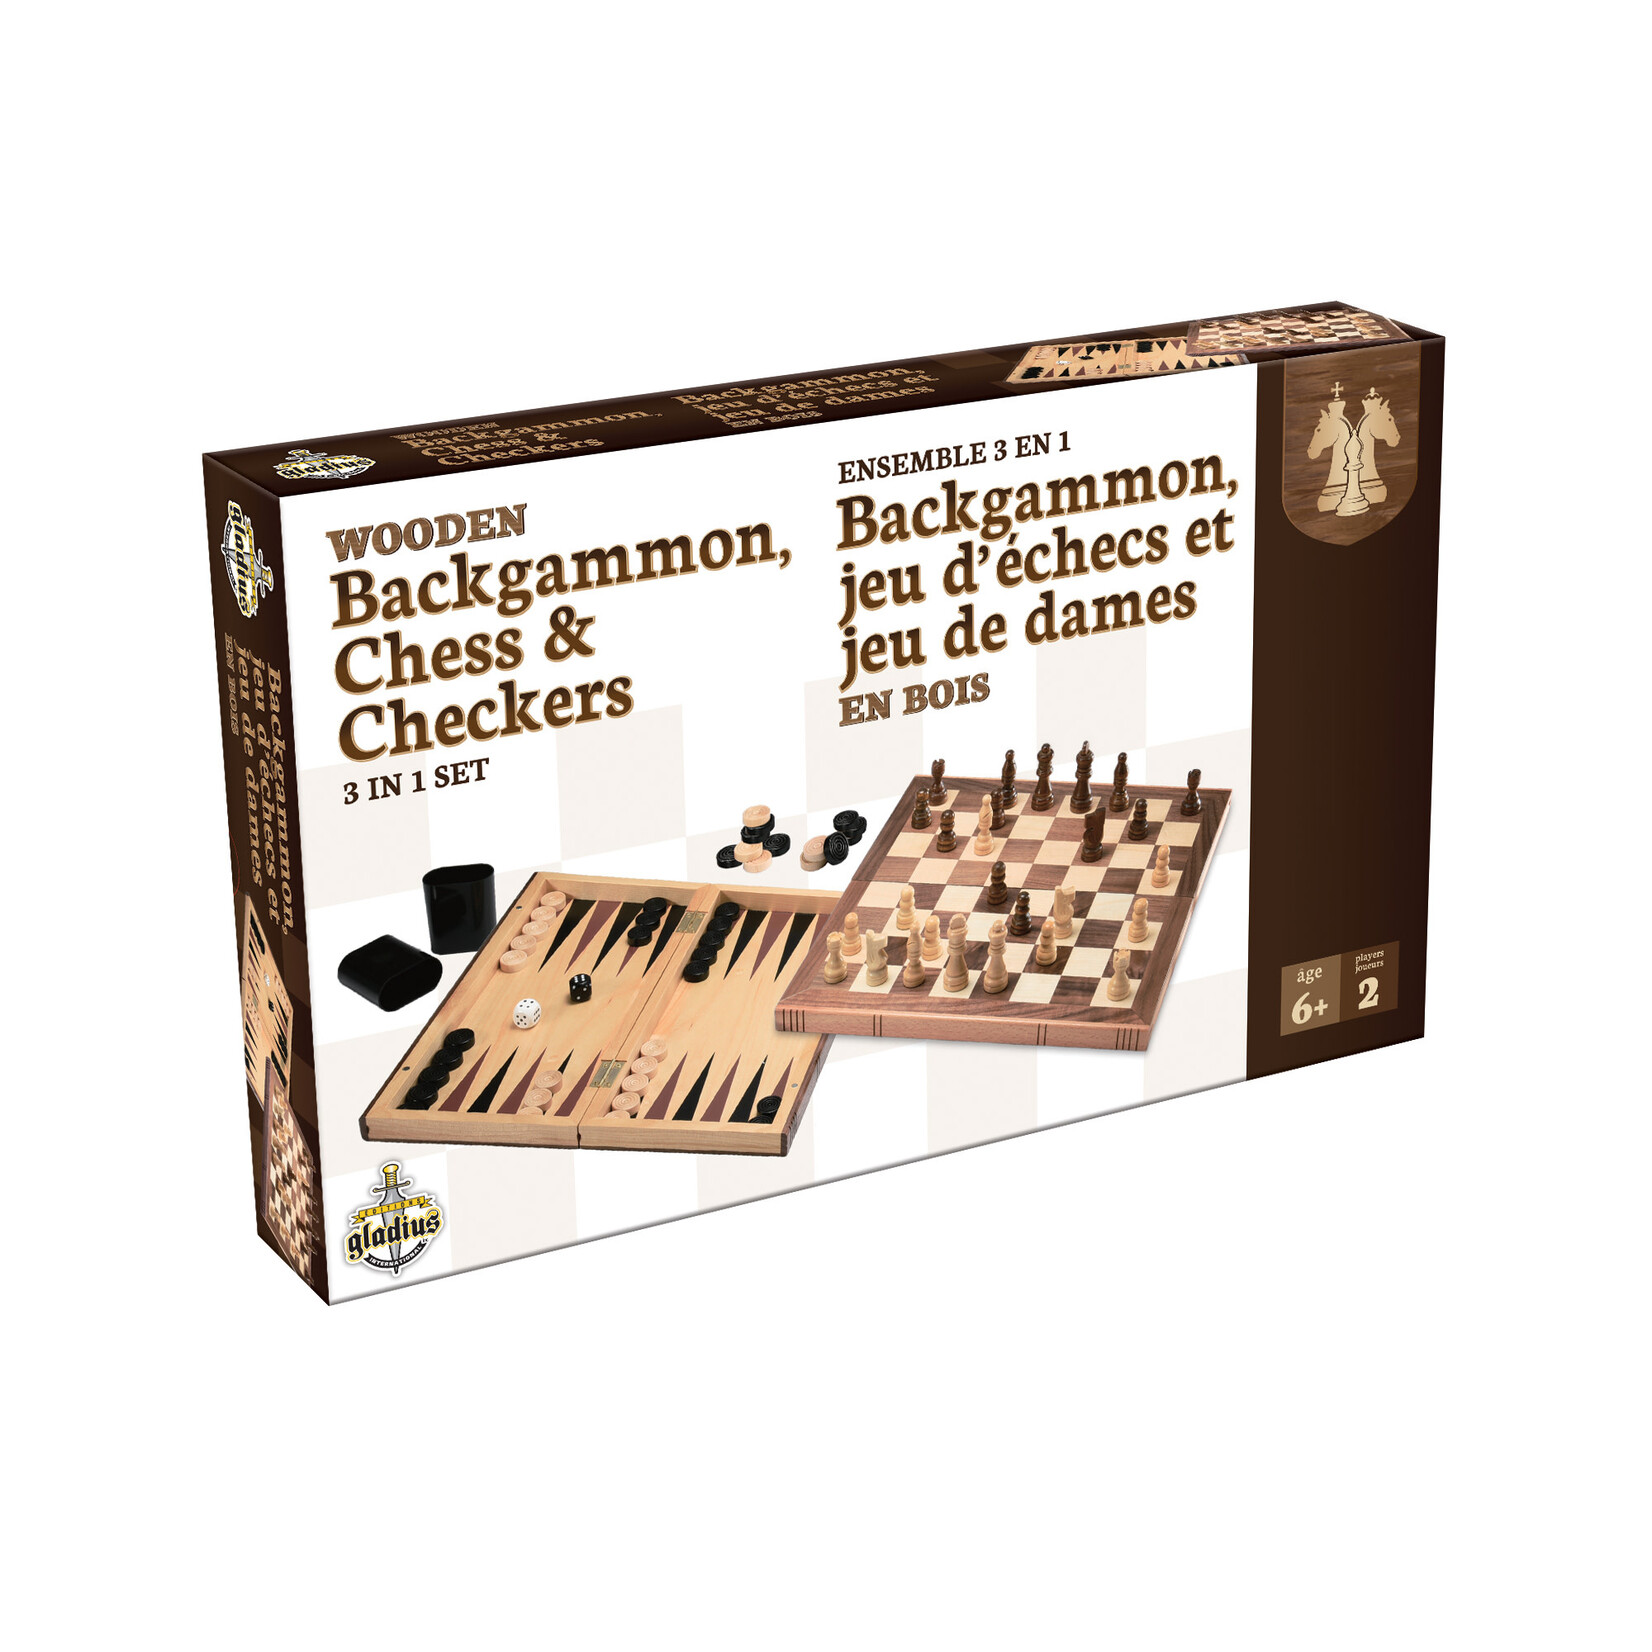 Gladius Backgammon, jeux d’échecs et de dames en bois – Ensemble 3-en-1